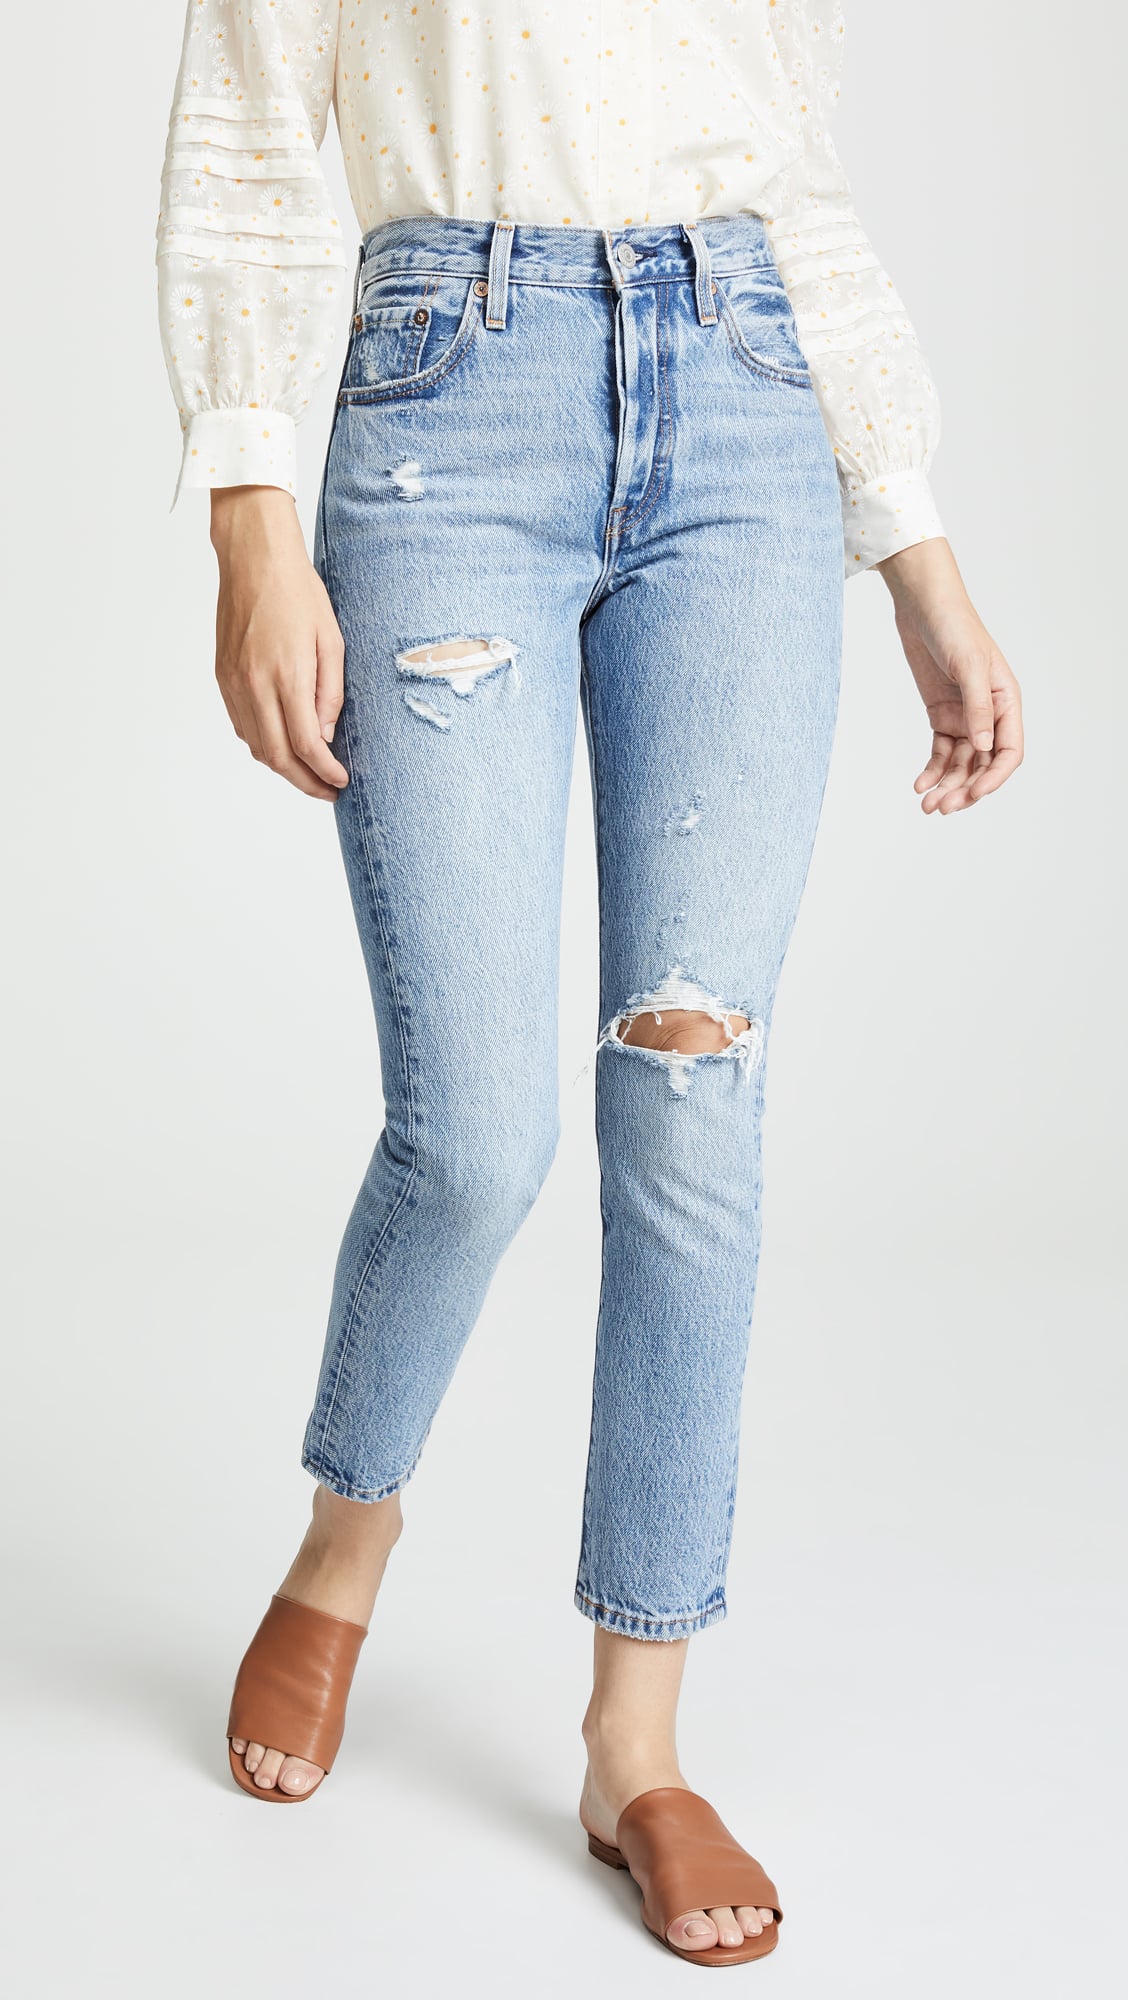 jeans levis high waist